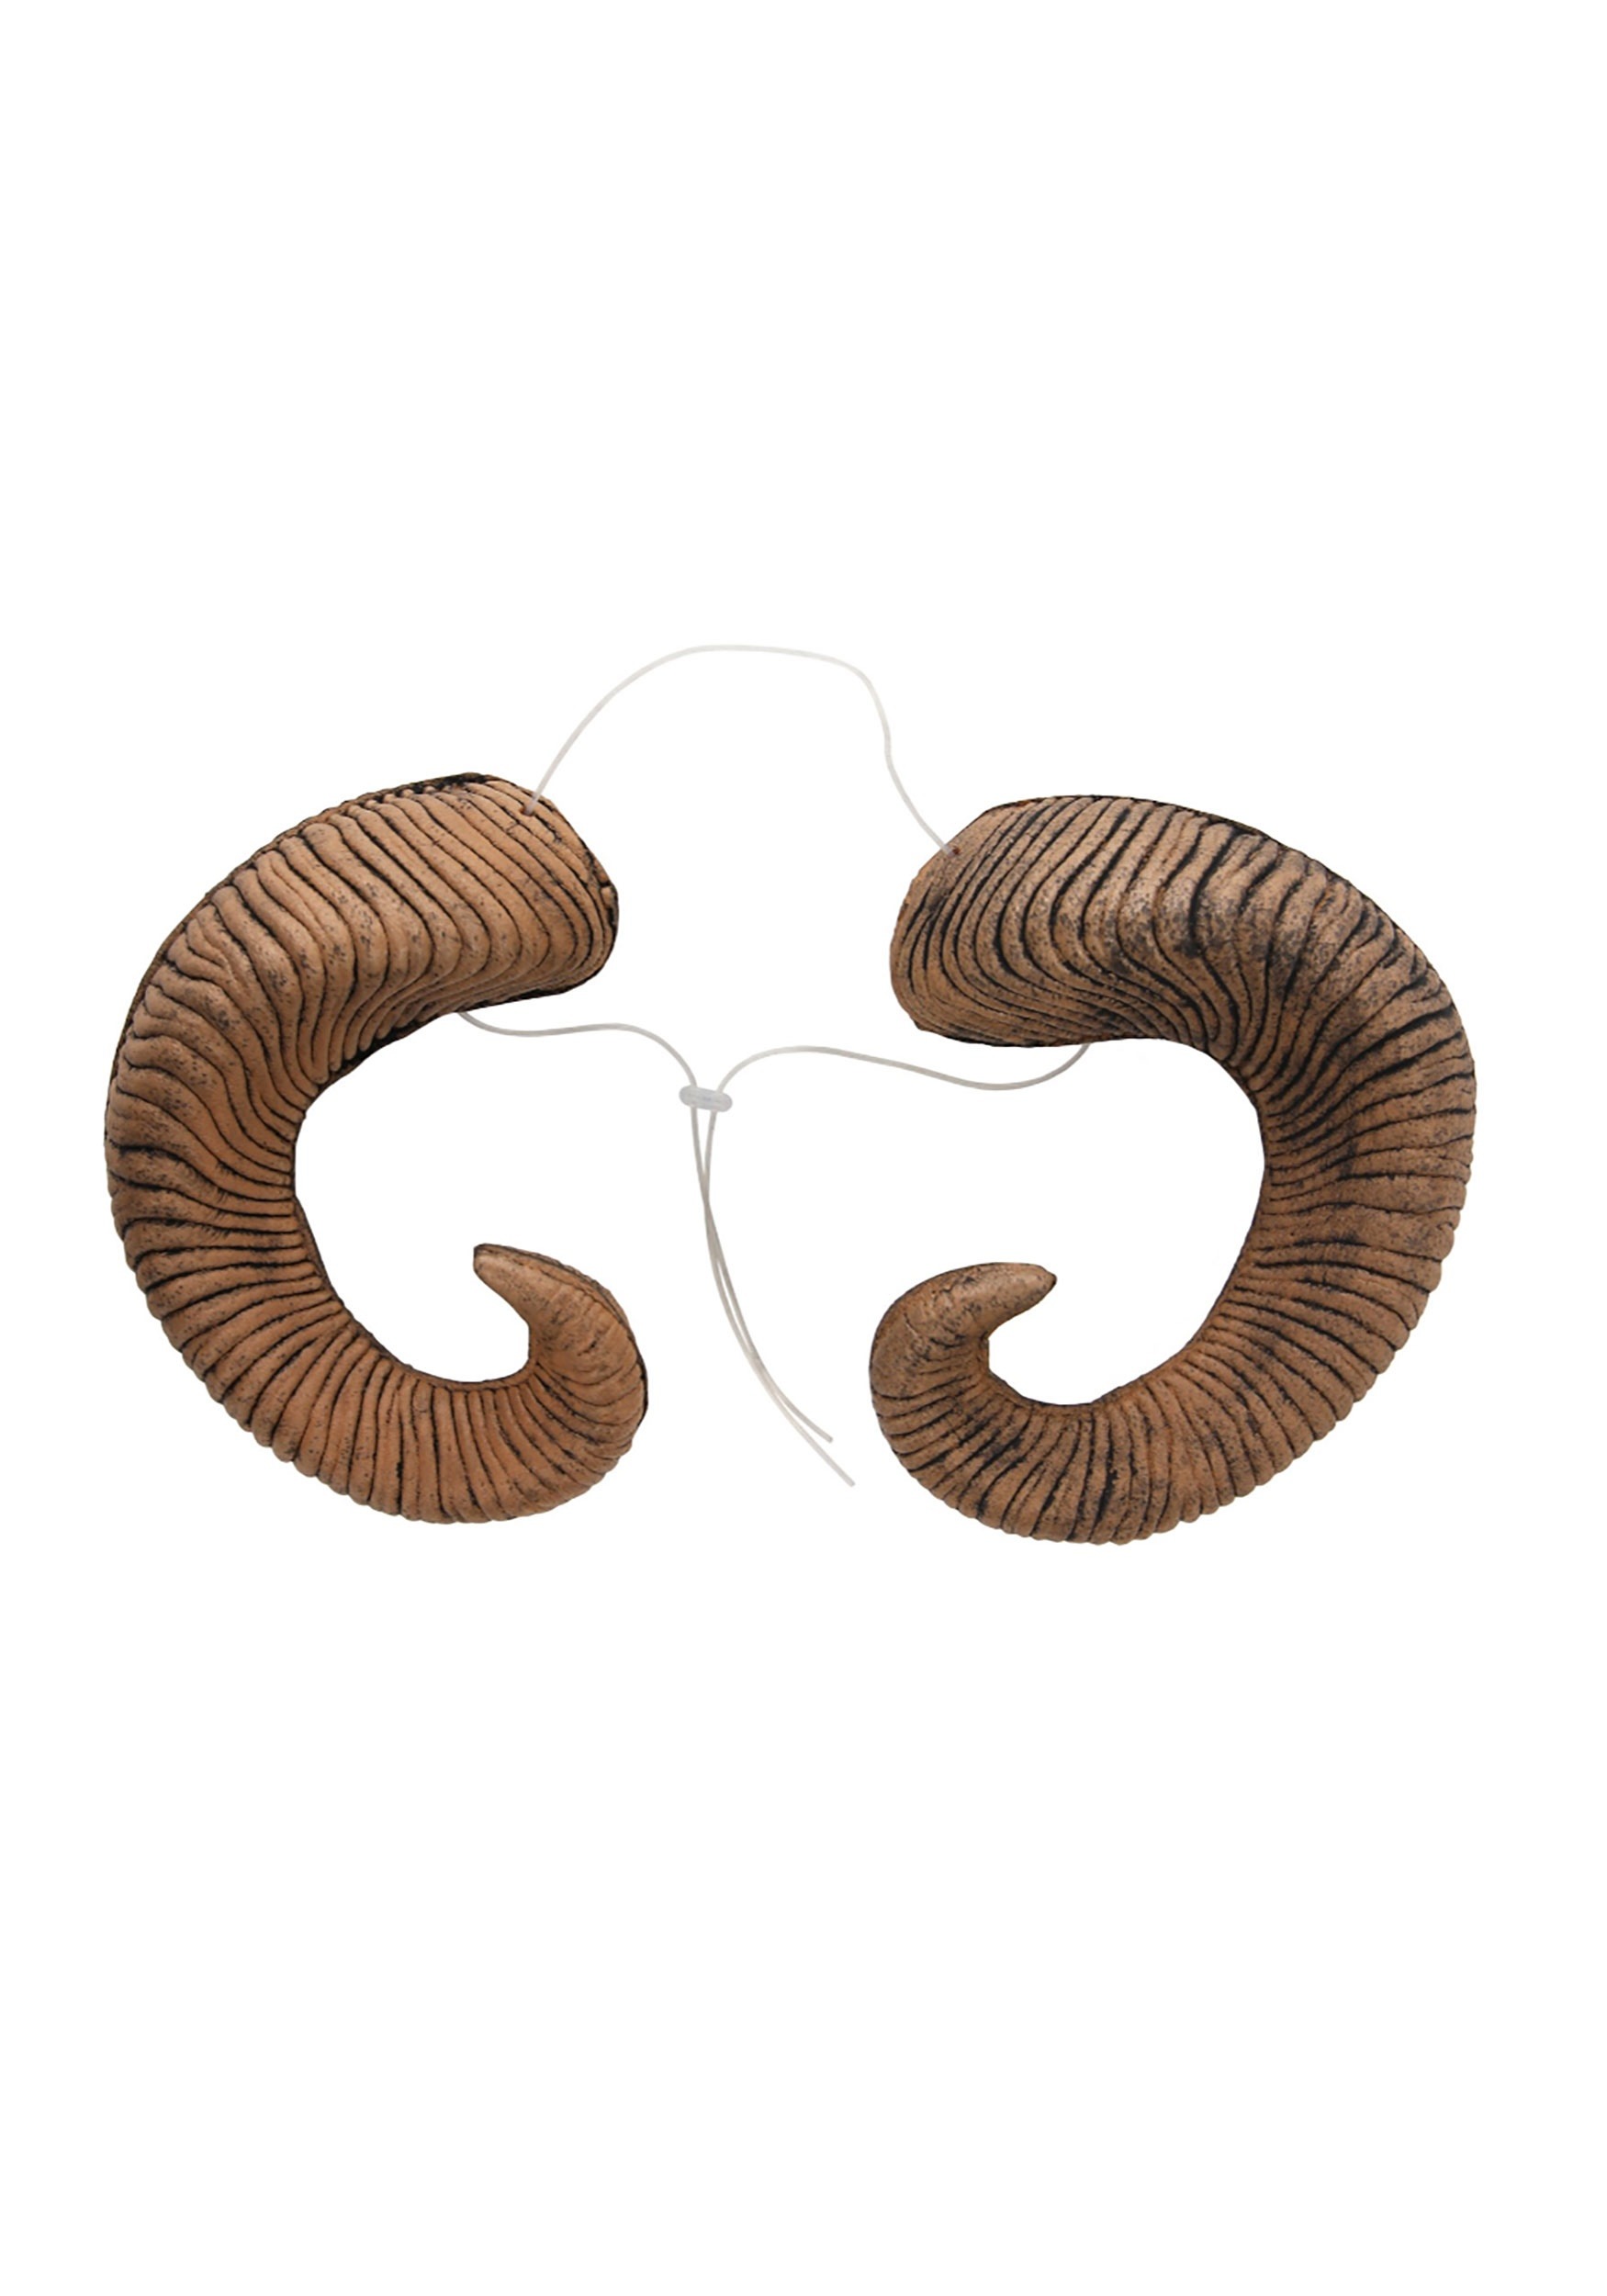 Ram Adult Horns